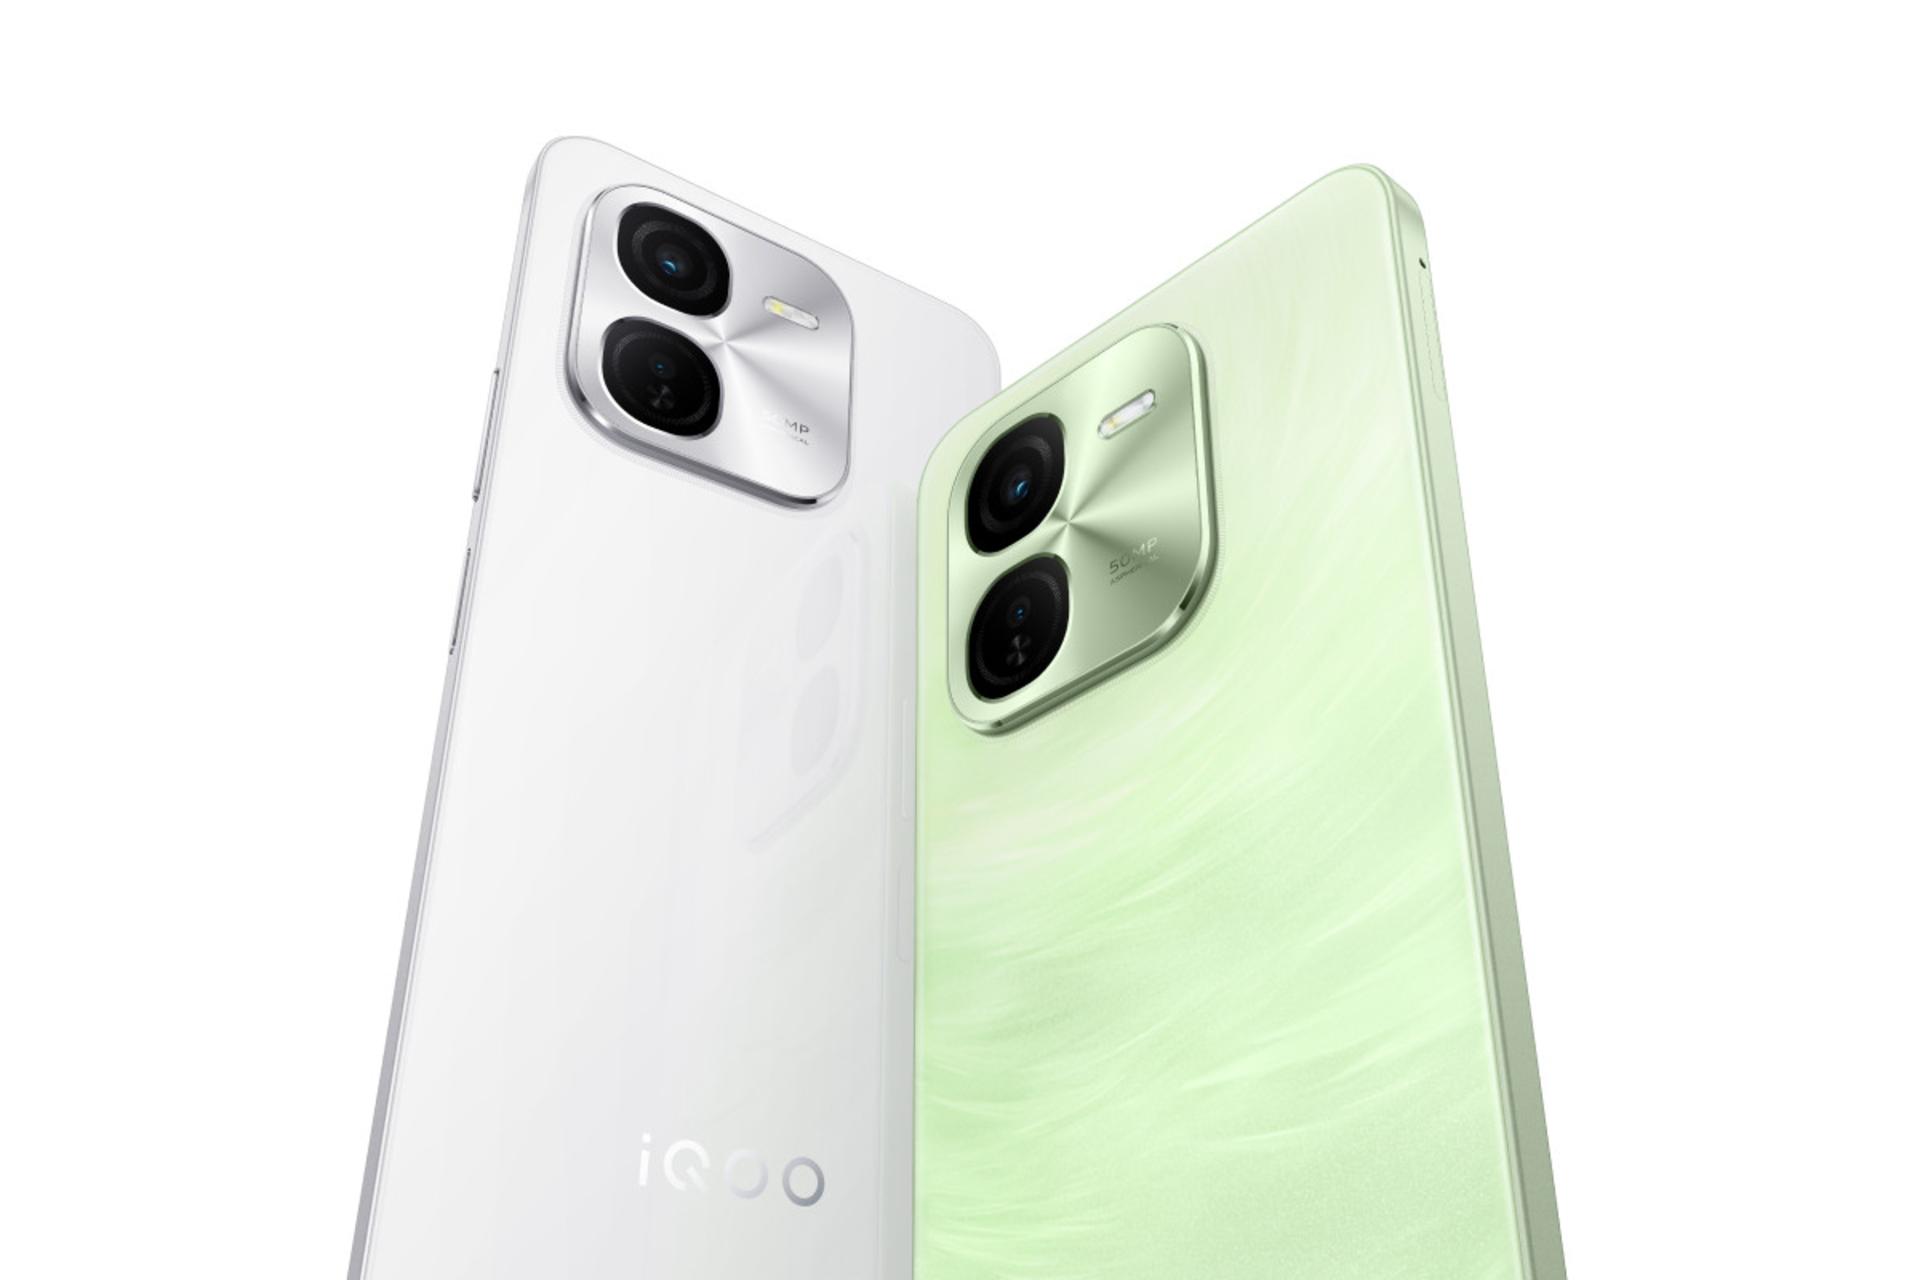 گوشی موبایل iQOO Z9x ویوو رنگ سفید و سبز روشن / vivo iQOO Z9x